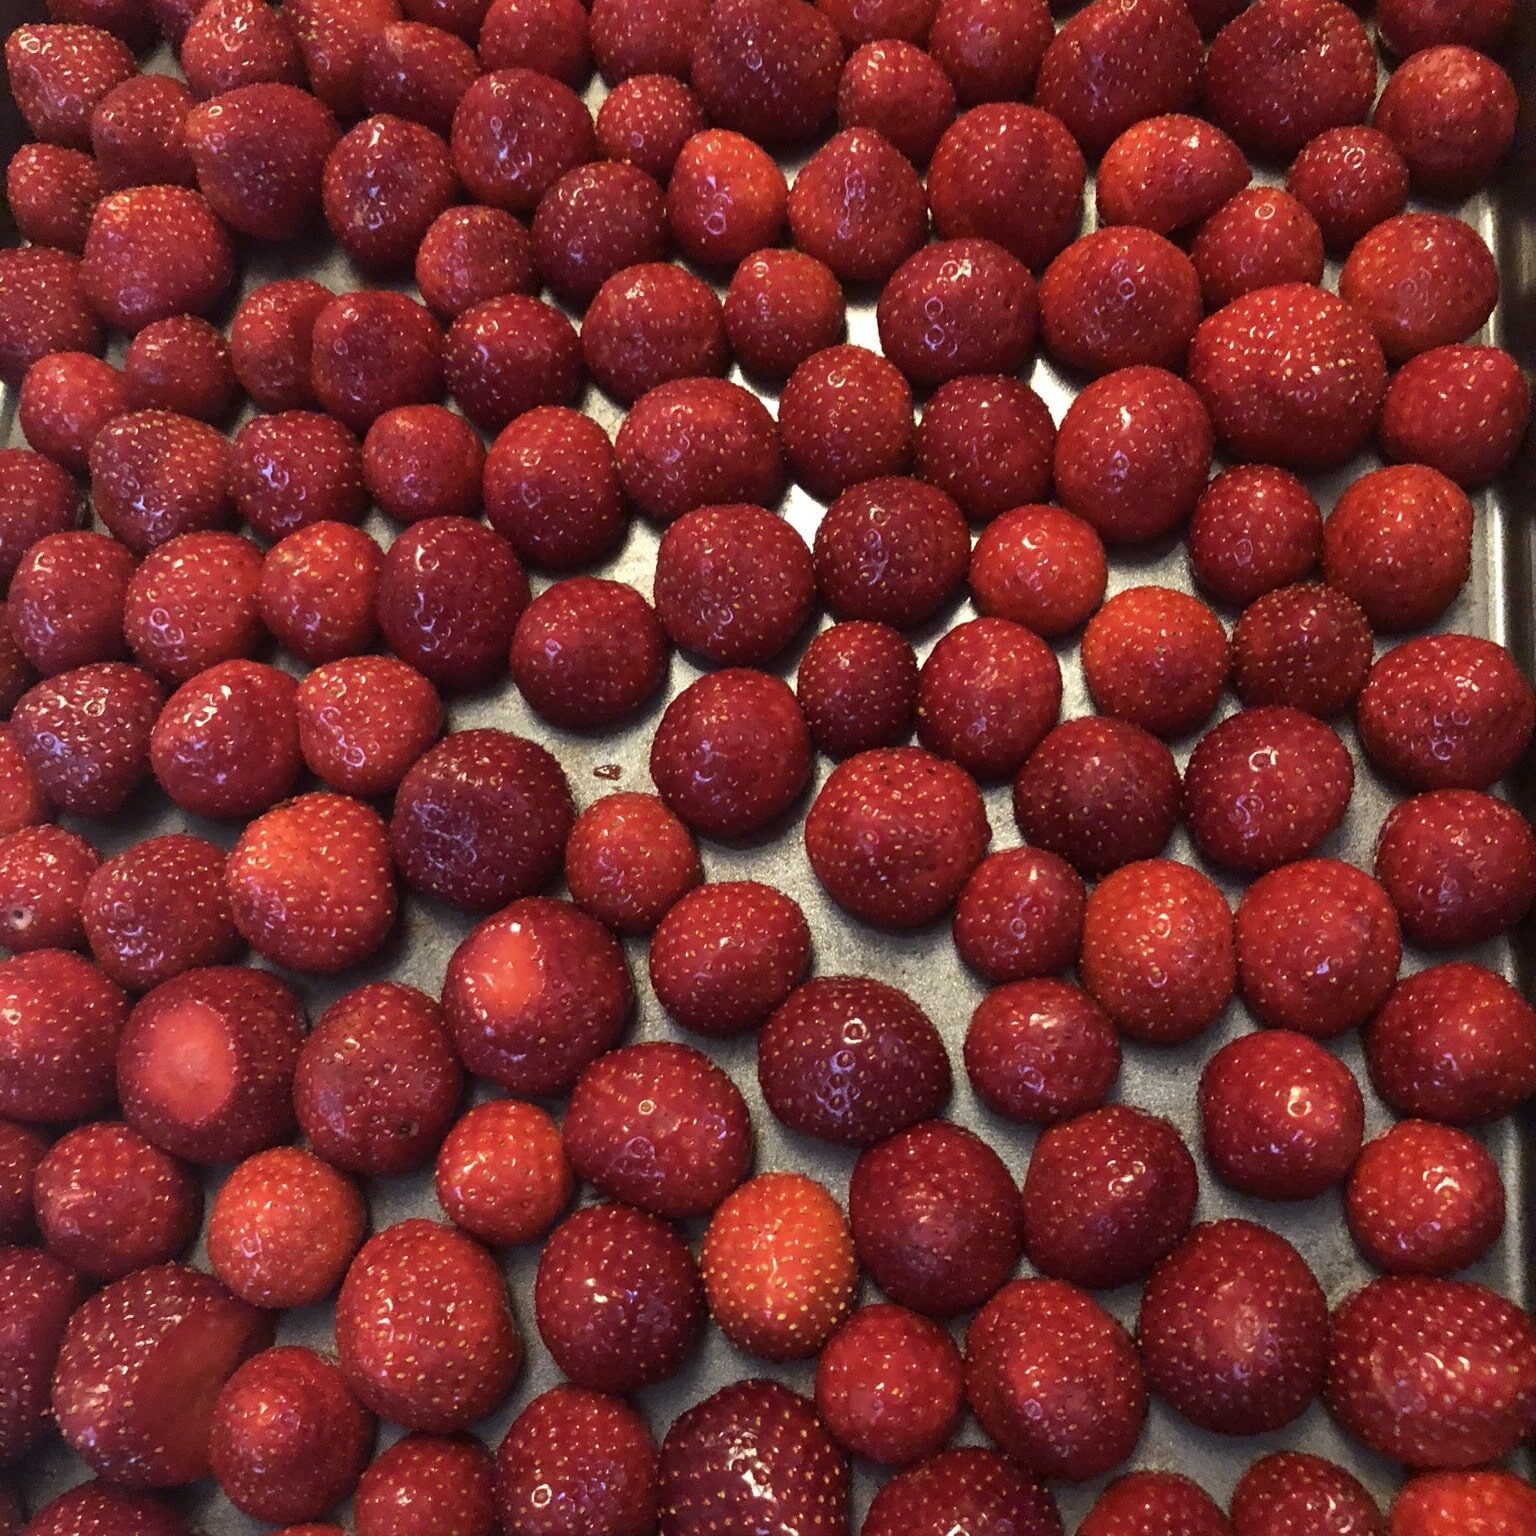 Freezing Berries